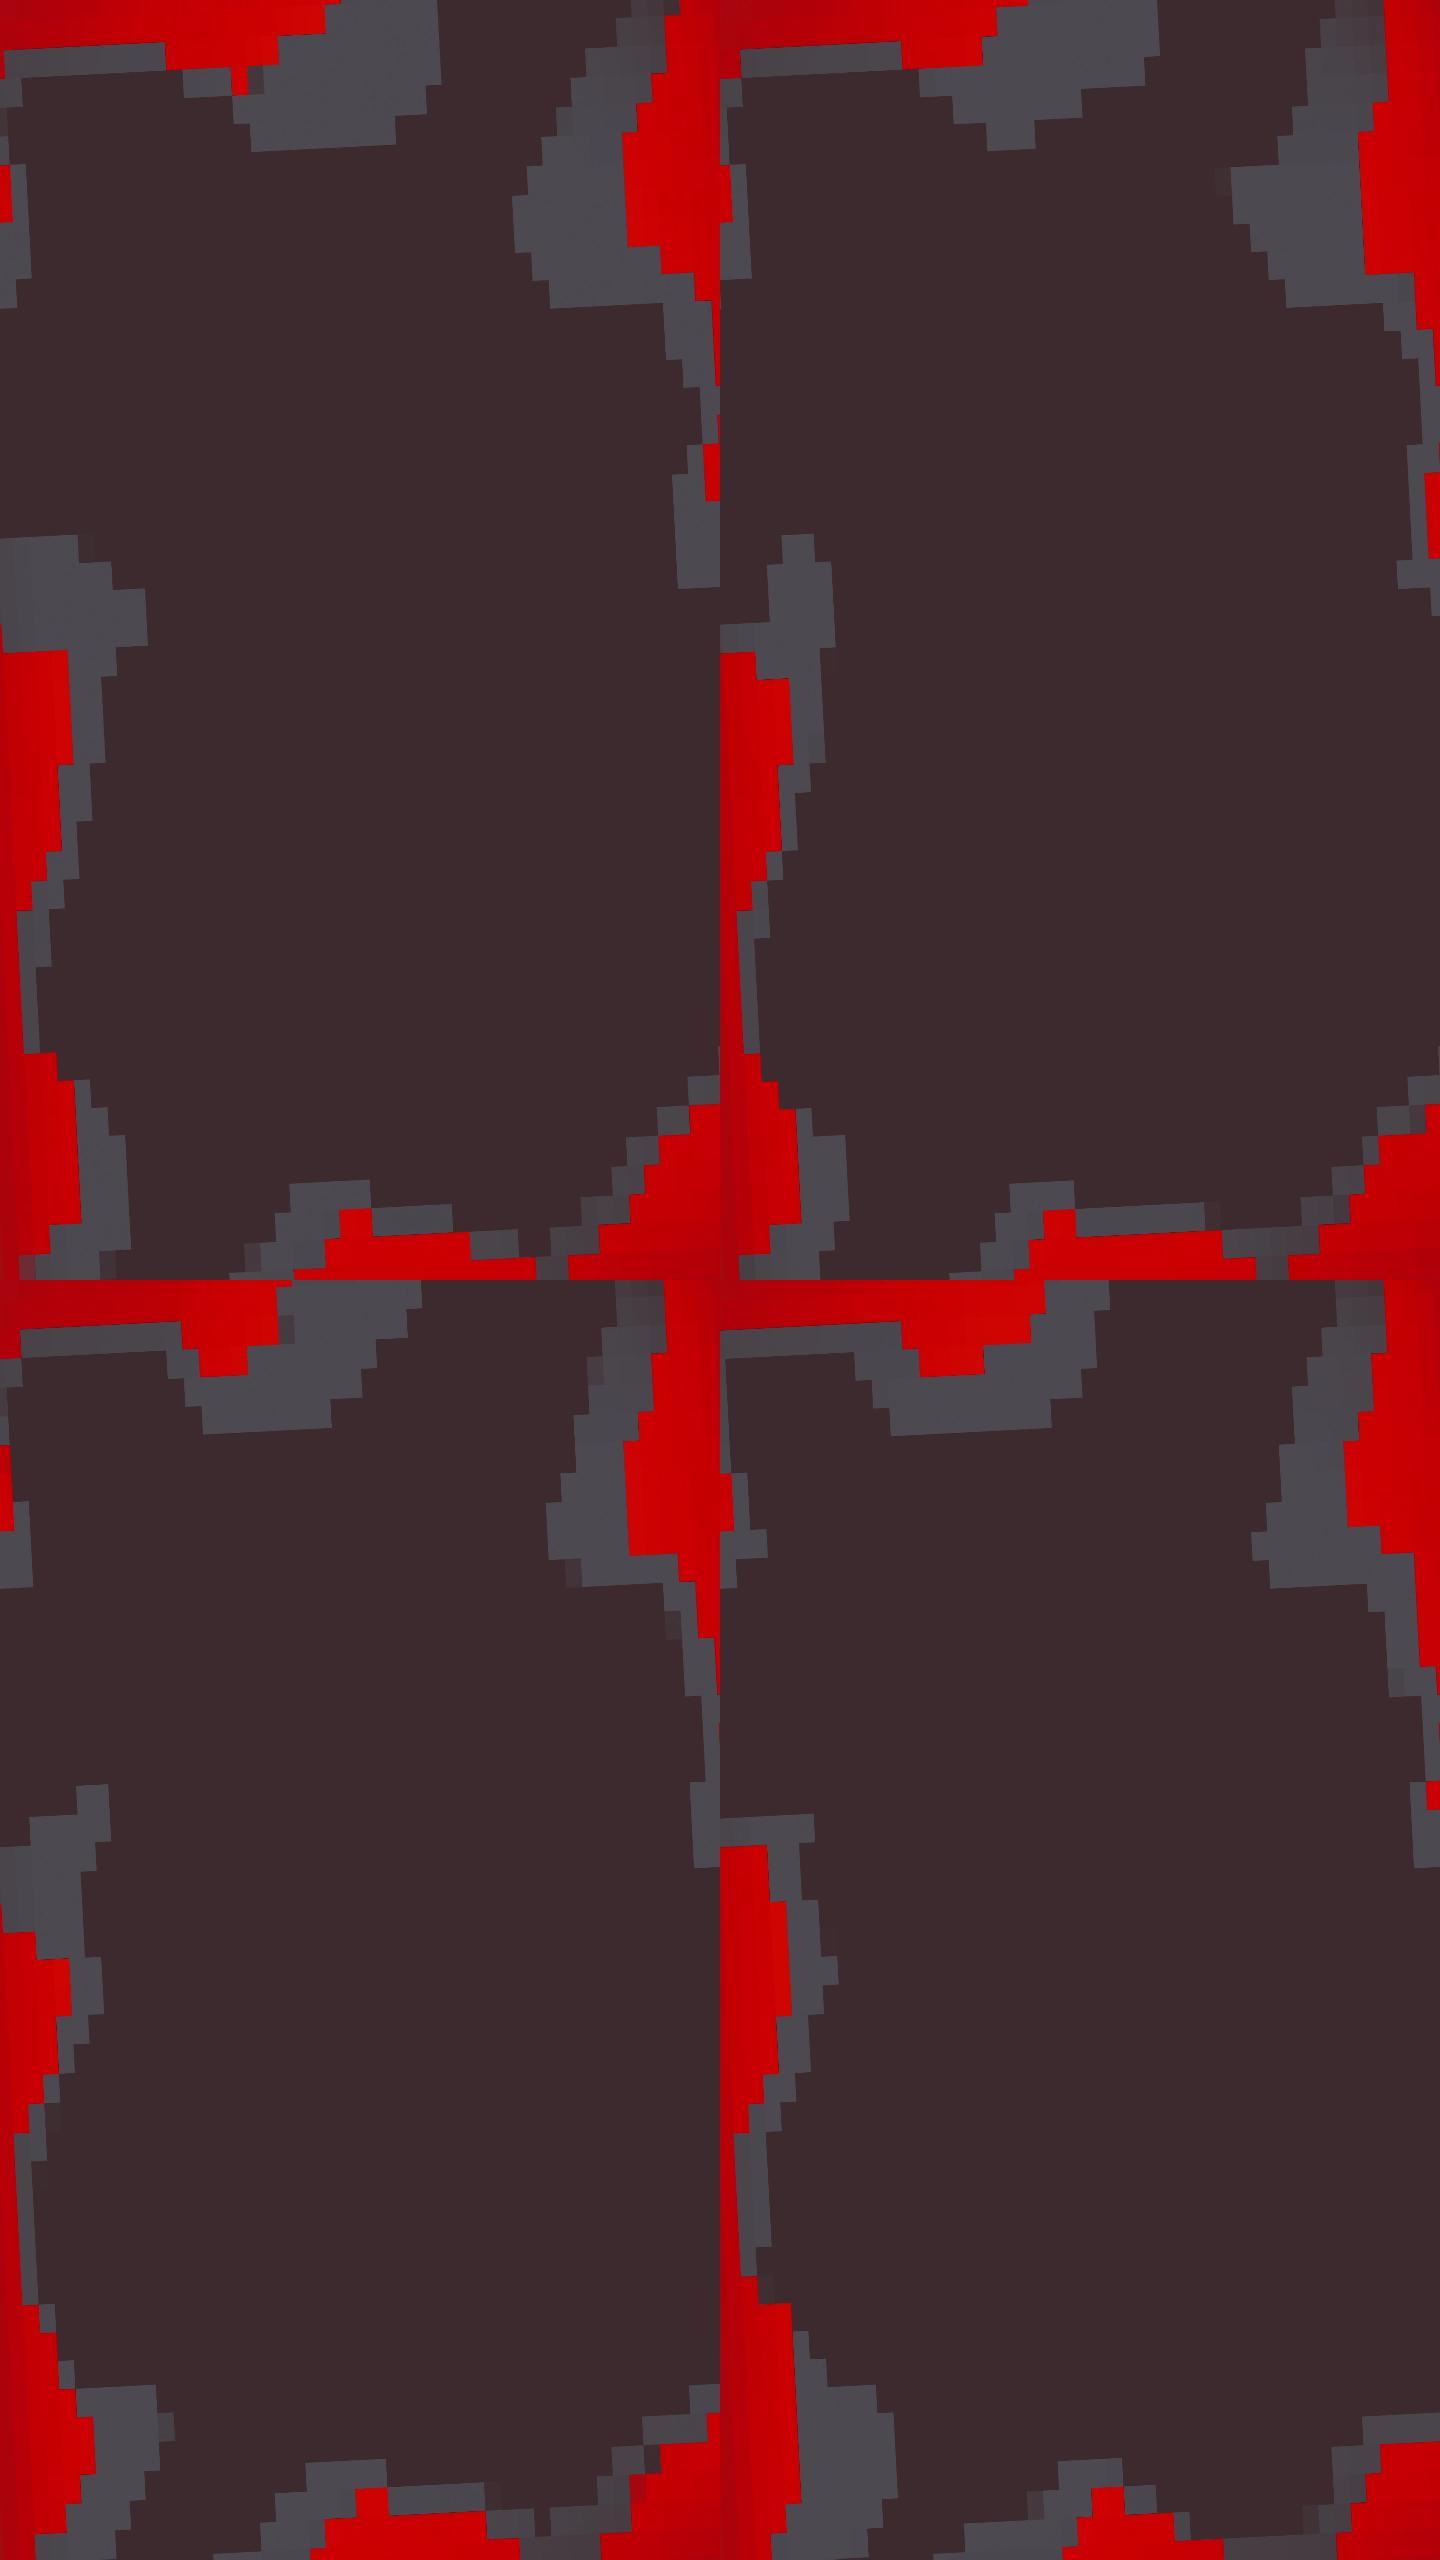 暗红色和灰色像素复制框架背景